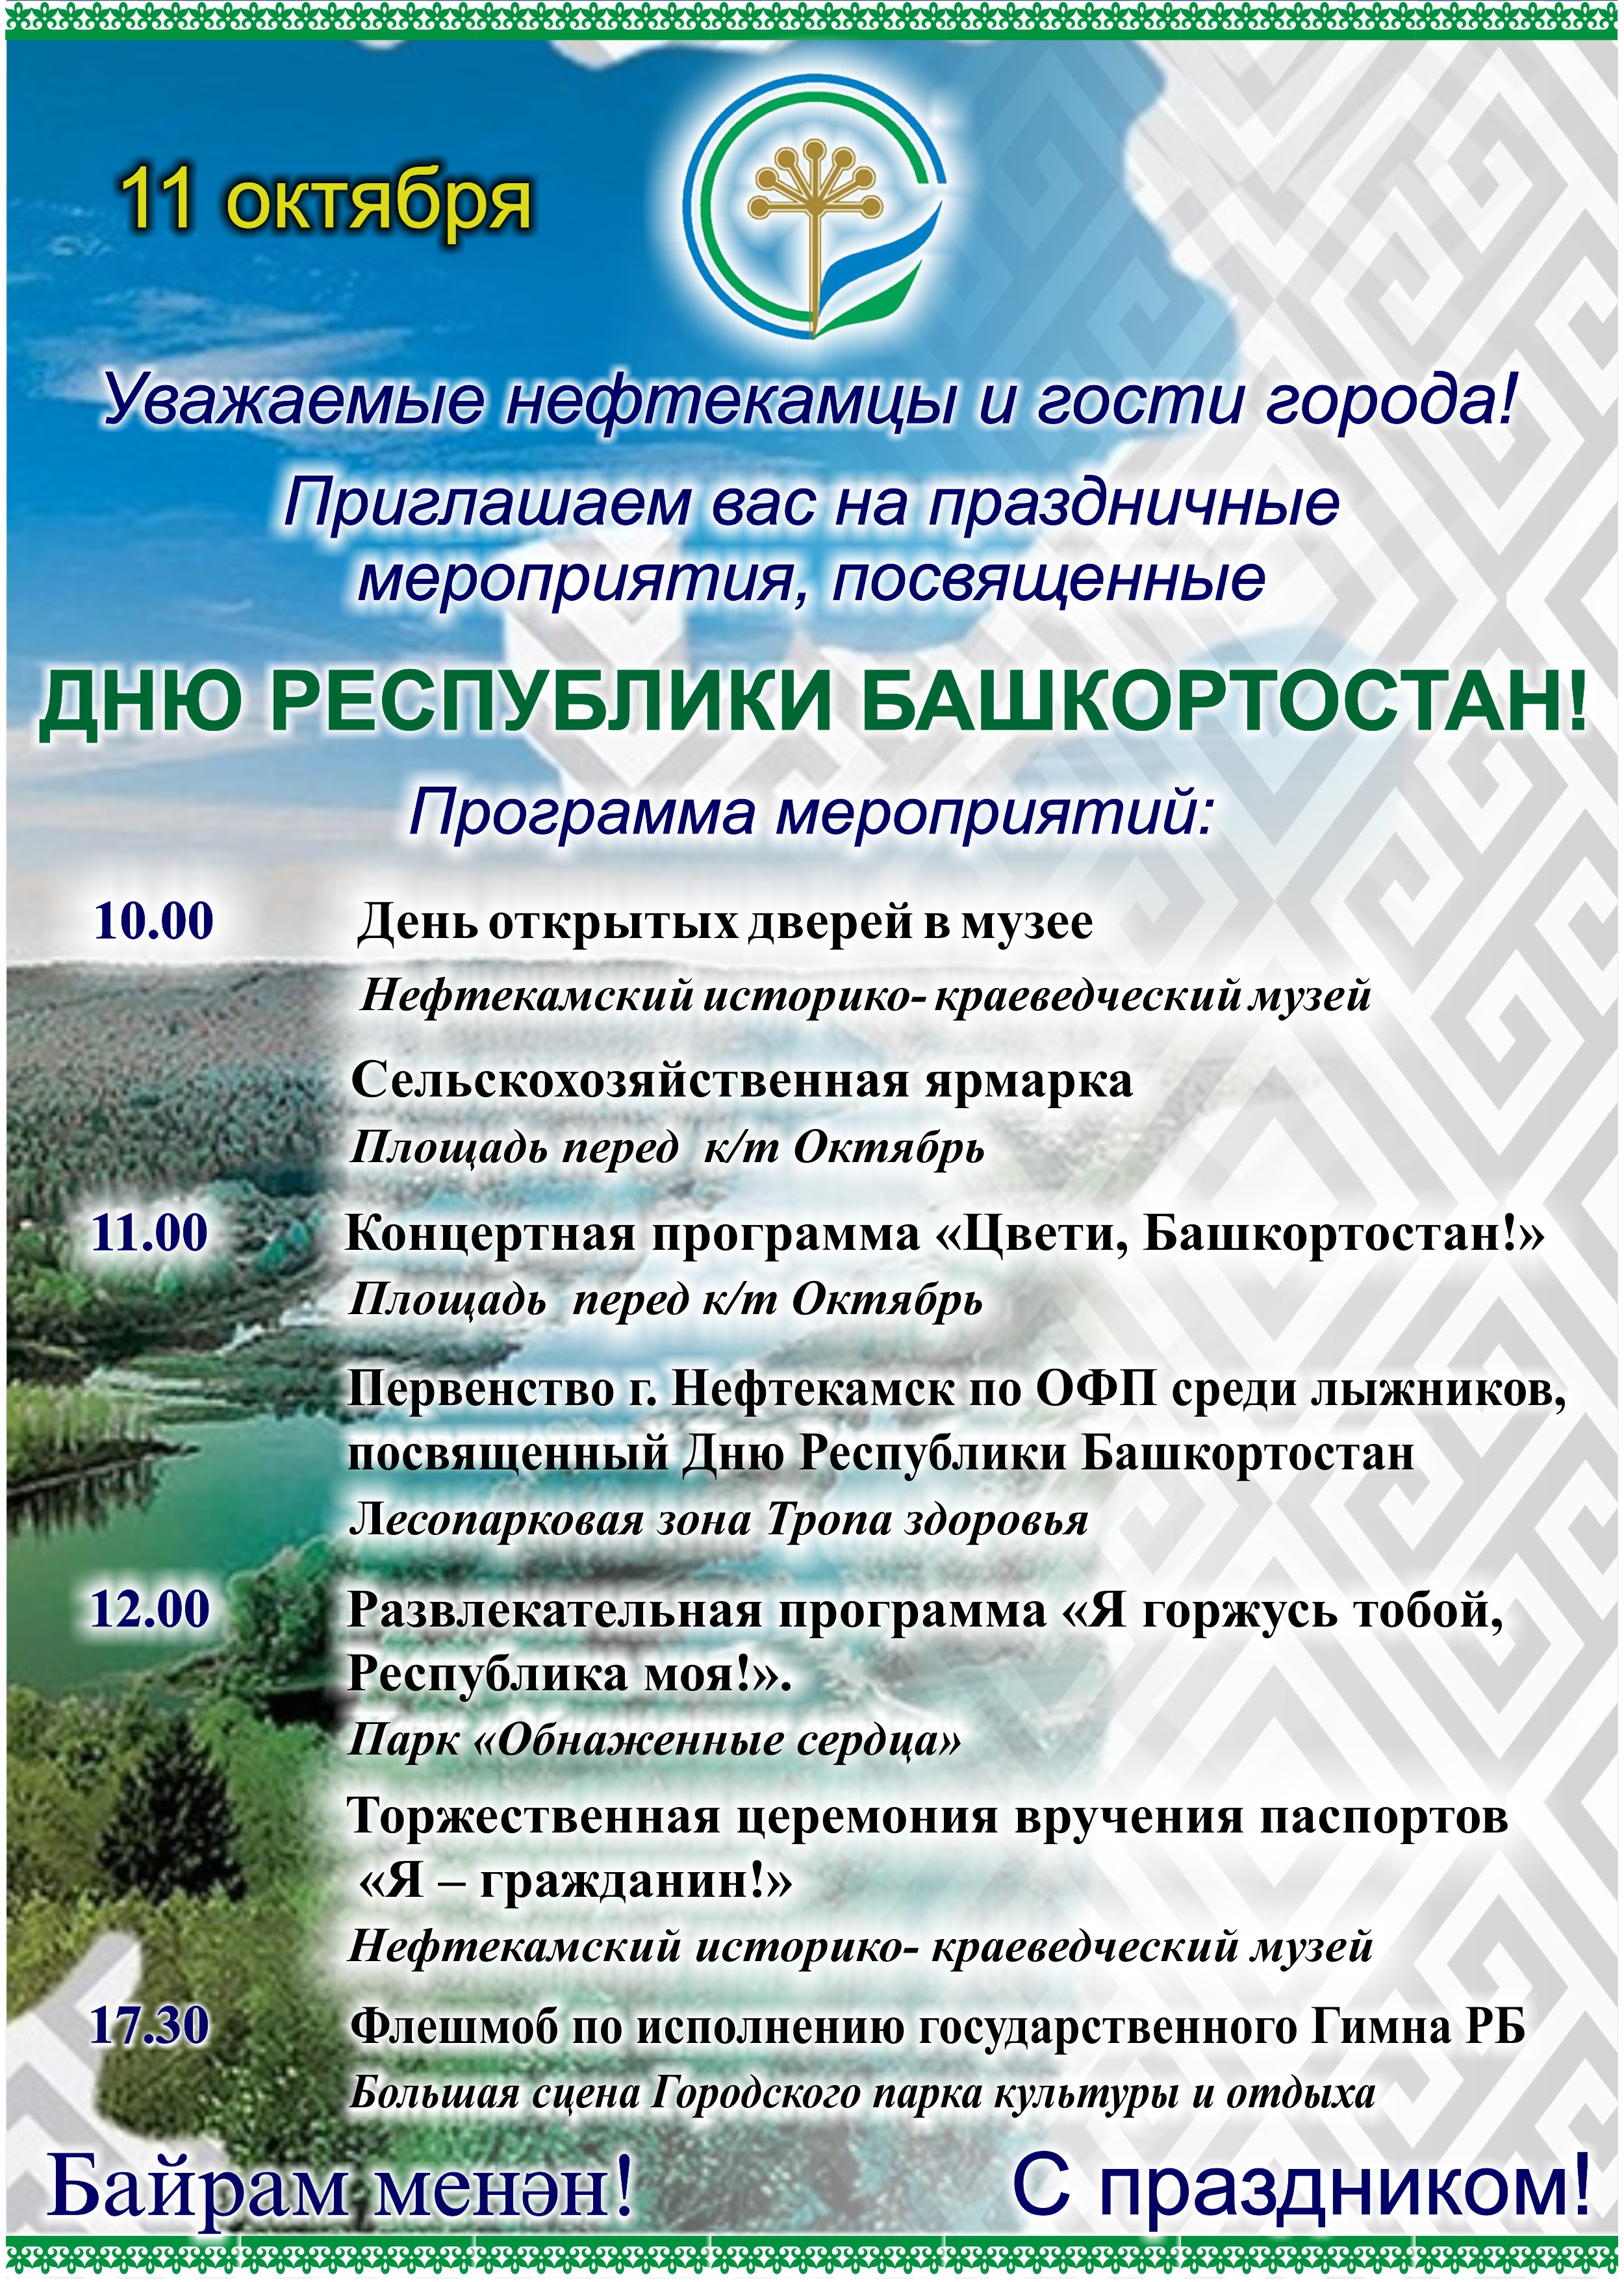 Программа праздничных мероприятий, посвященных Дню Республики Башкортостан.